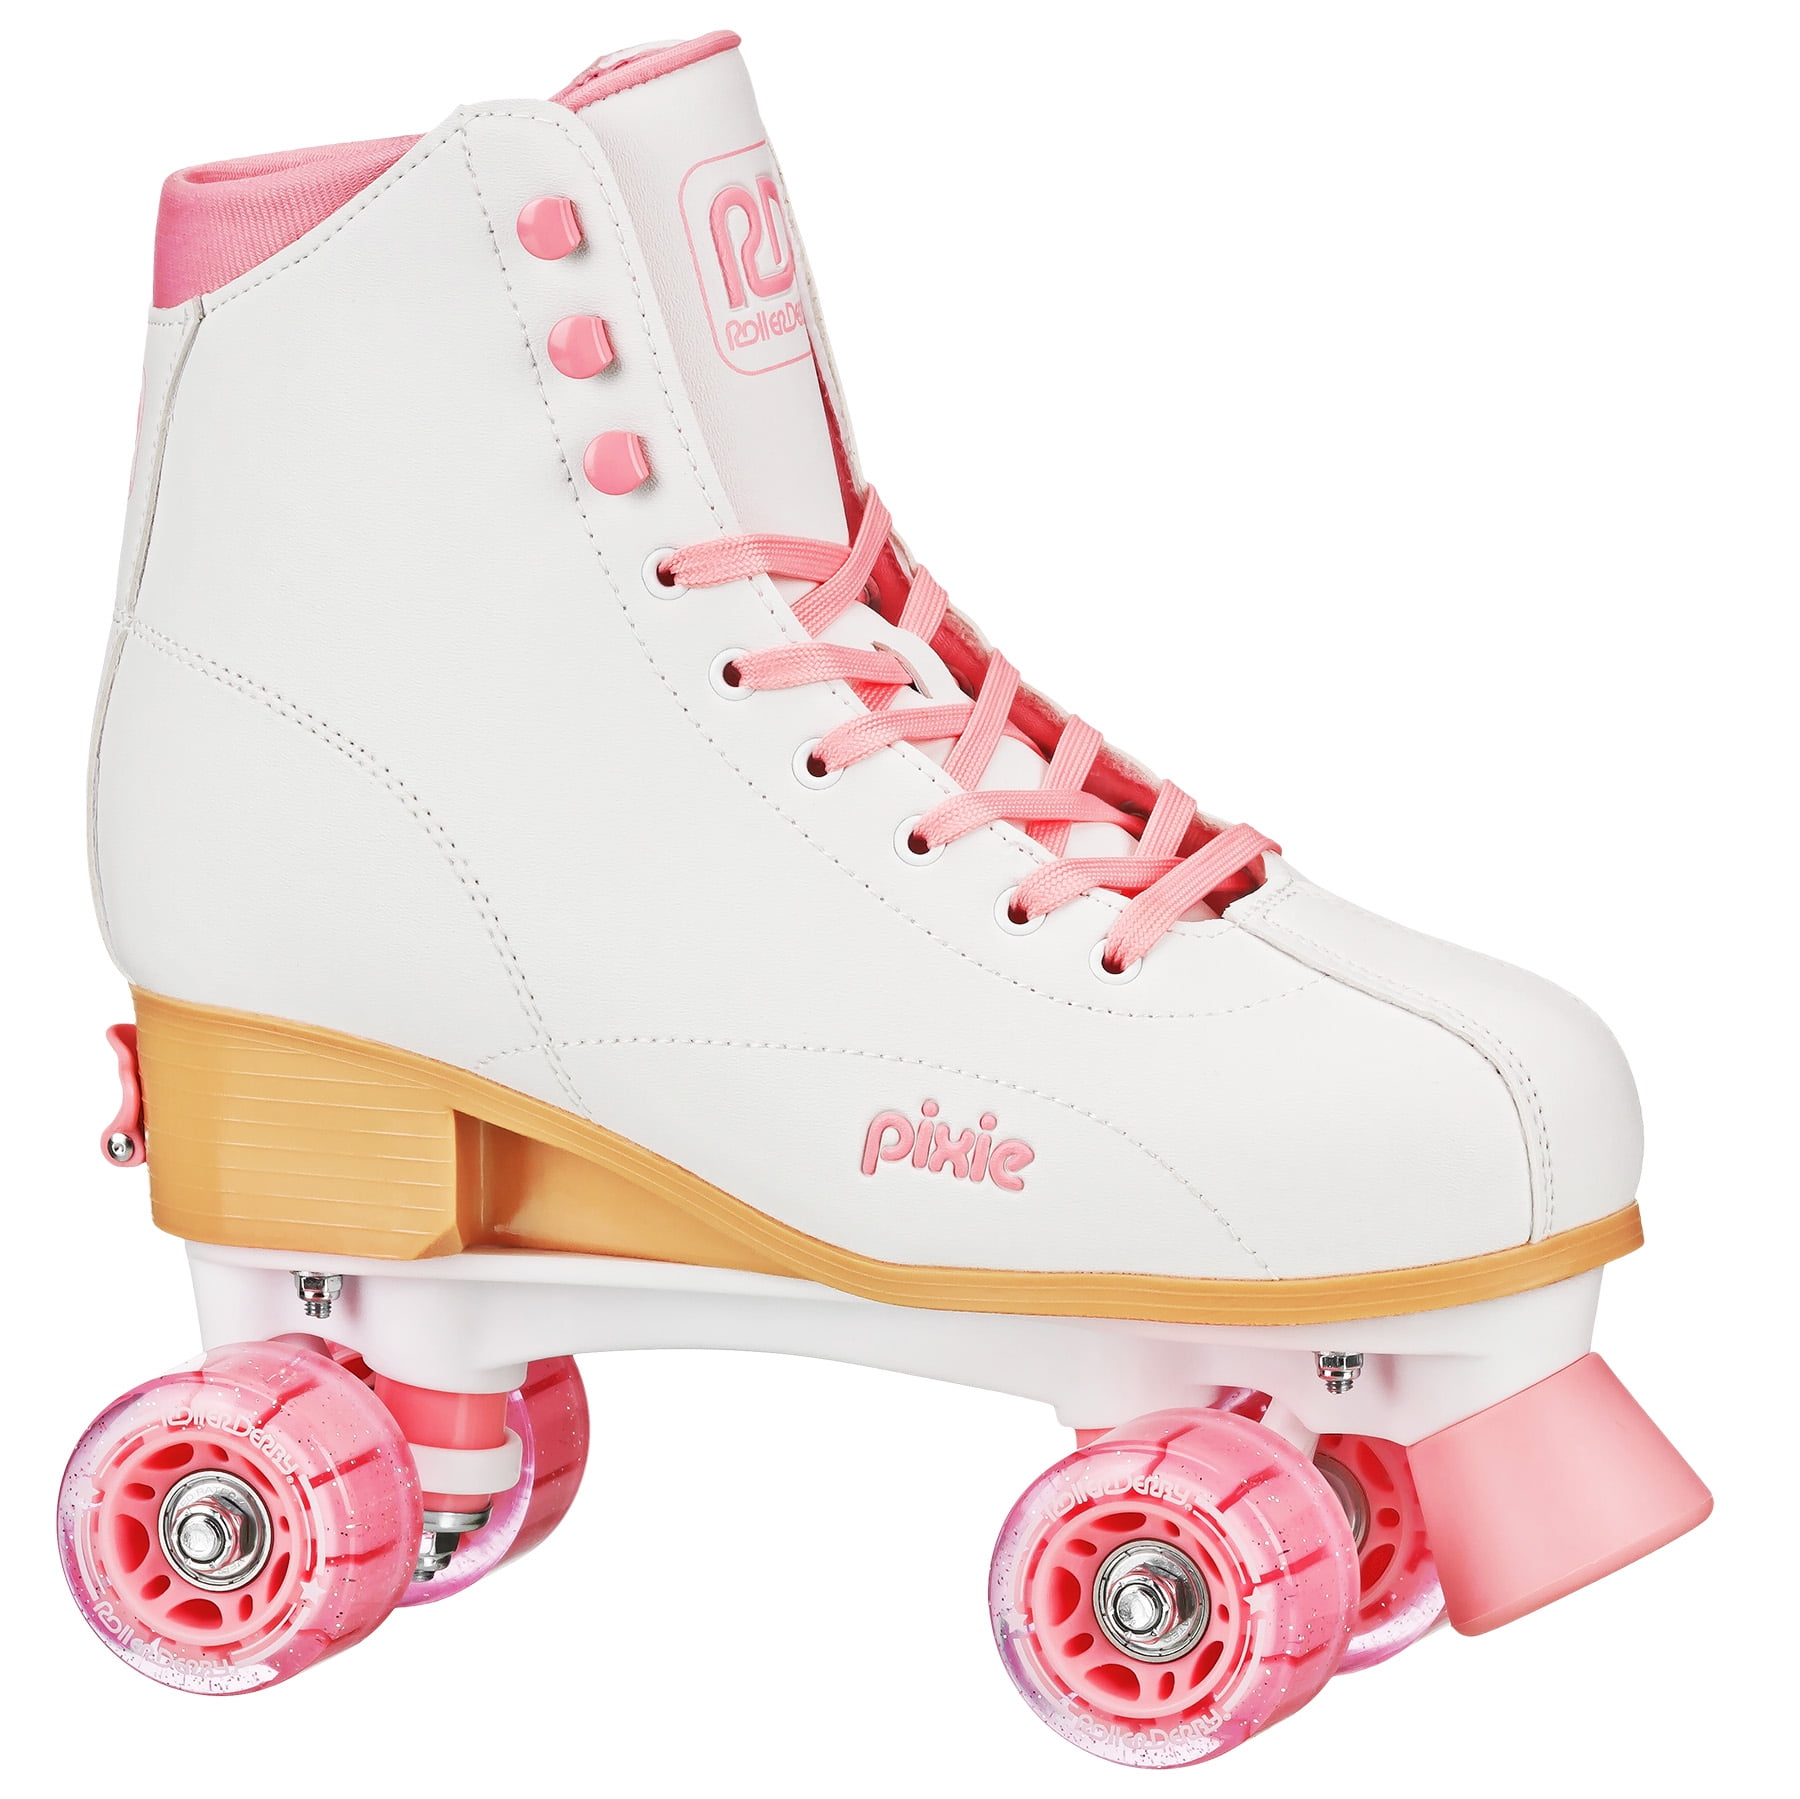 Roller Derby Pixie Hightop Adjustable Adult Women S Roller Skates Size